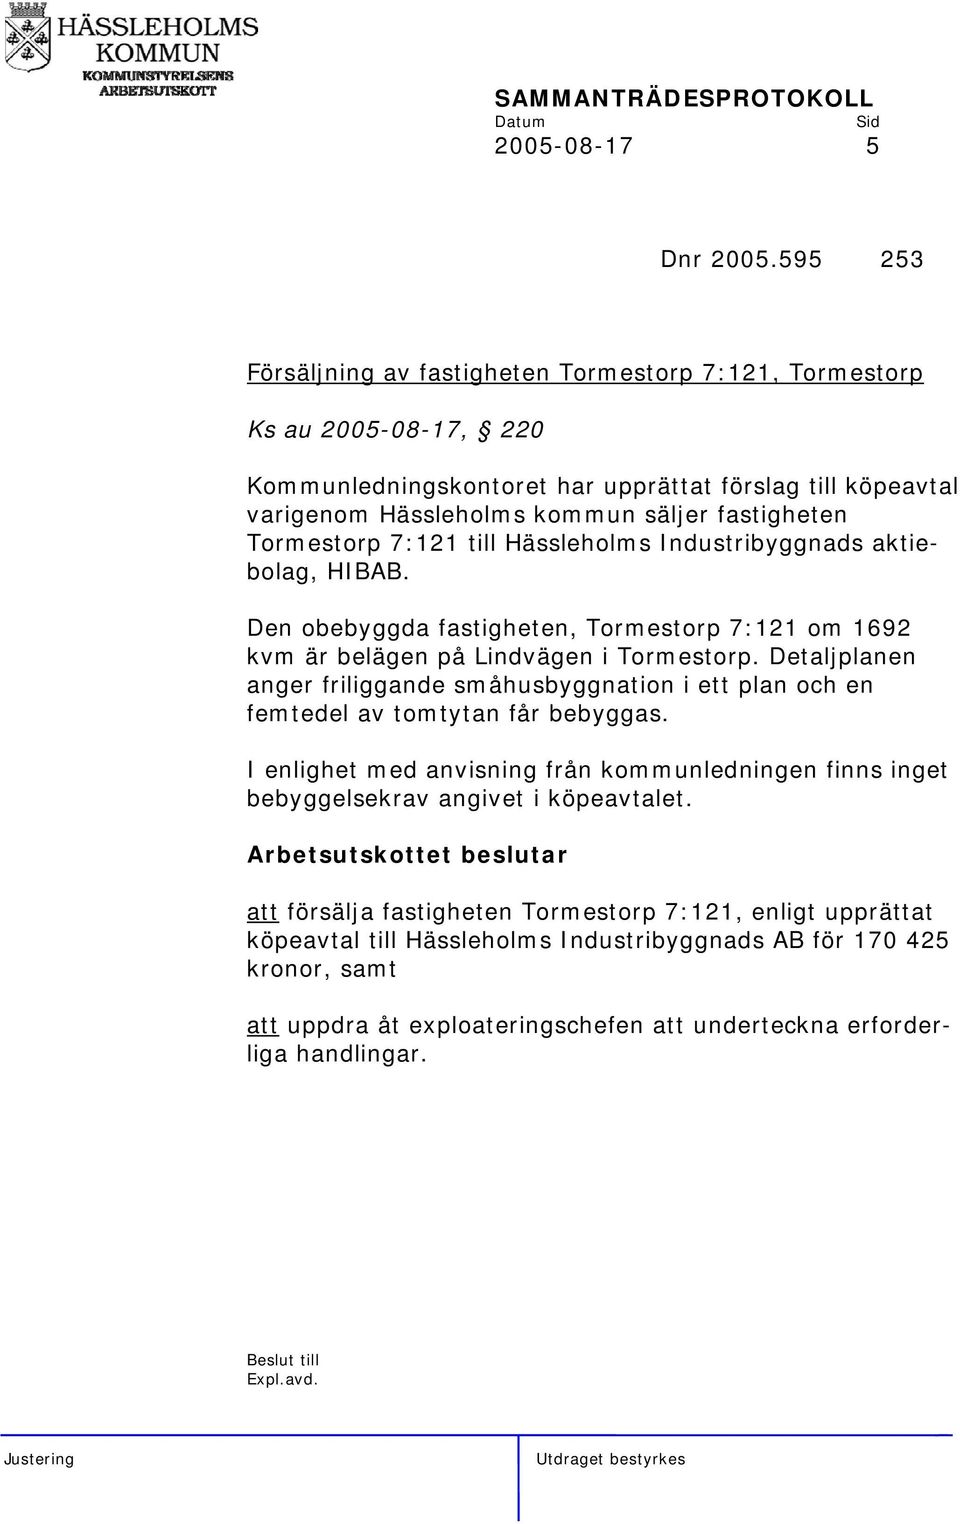 Tormestorp 7:121 till Hässleholms Industribyggnads aktiebolag, HIBAB. Den obebyggda fastigheten, Tormestorp 7:121 om 1692 kvm är belägen på Lindvägen i Tormestorp.